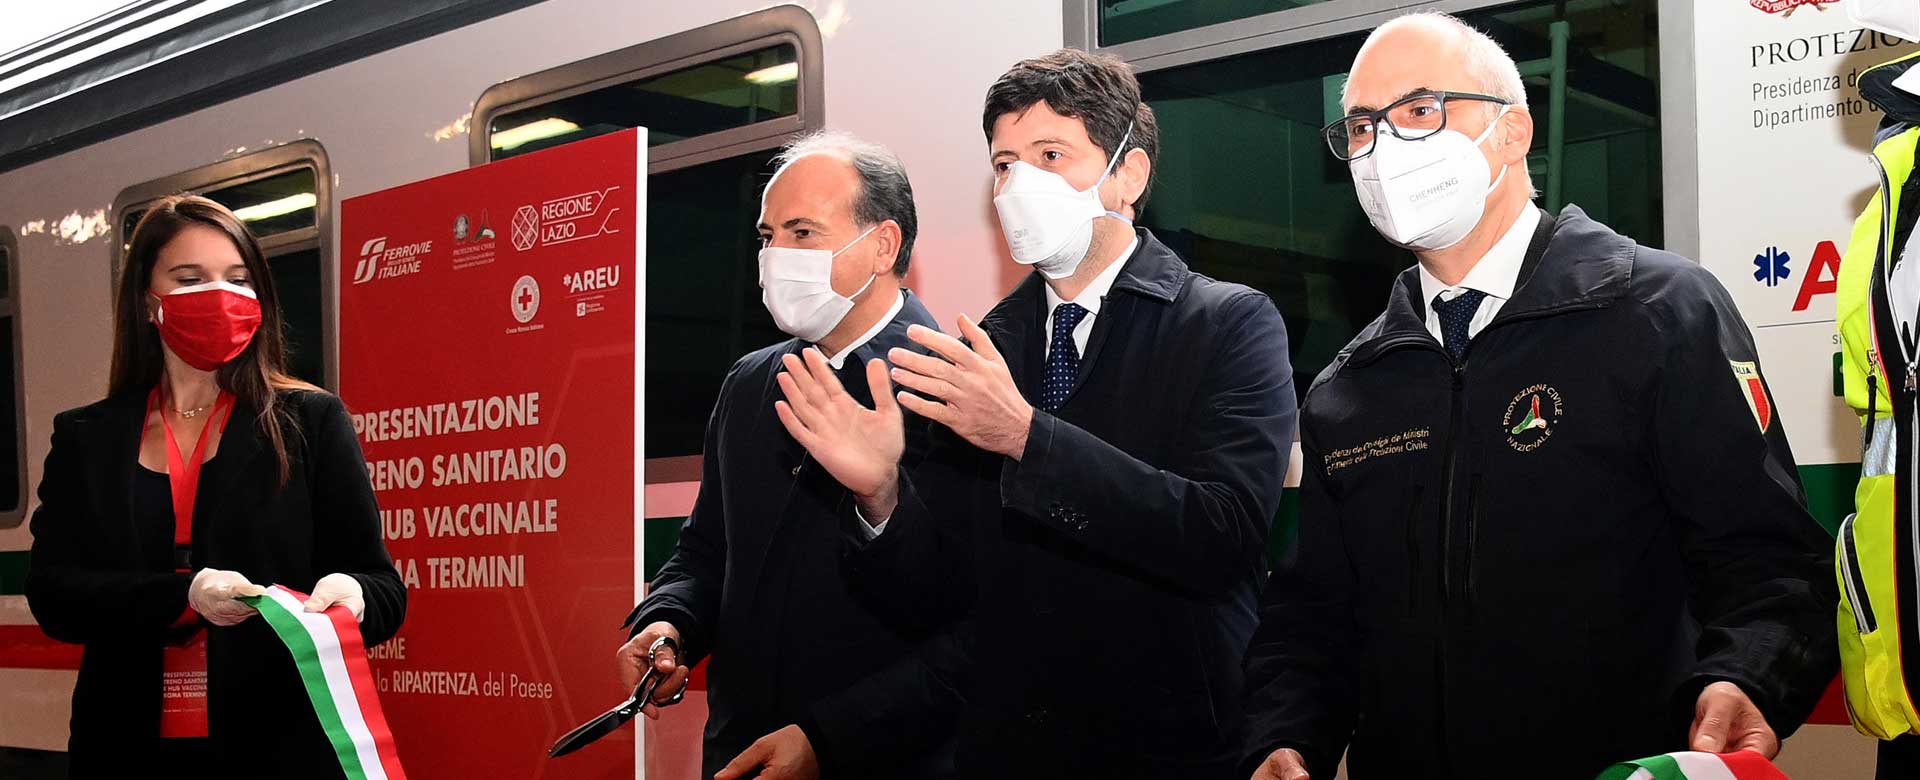 Gianfranco Battisti, AD di FS, Roberto Speranza, Ministro della Salute e Fabrizio Curcio, capo della Protezione Civile, davanti al treno sanitario in sosta a Roma Termini